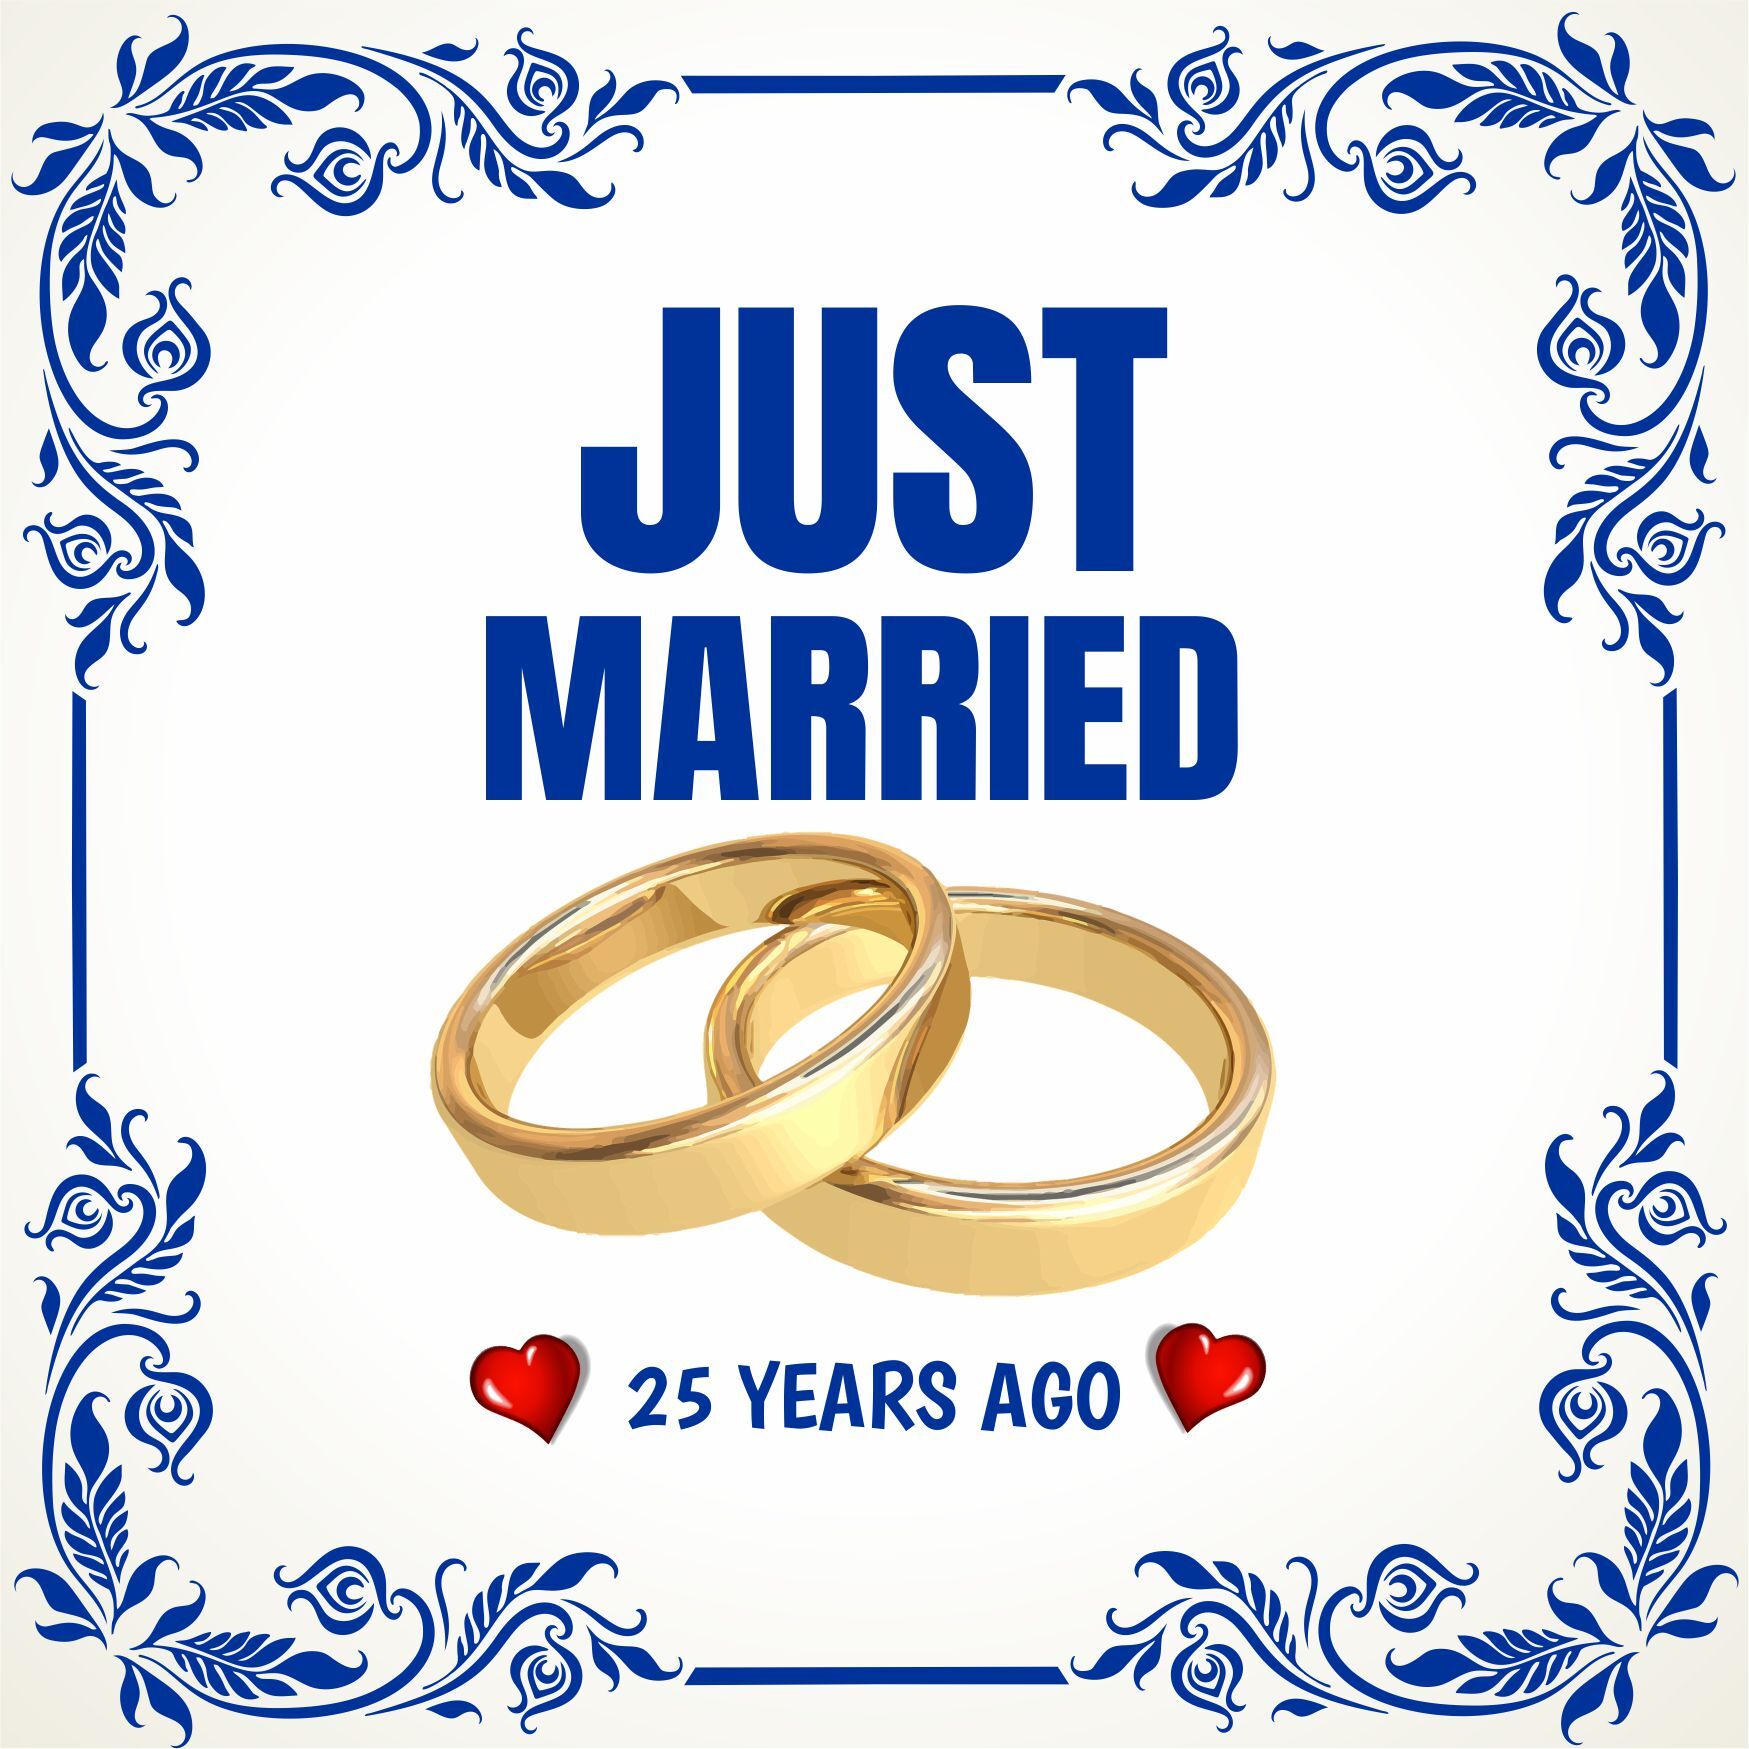 Tegel just married 25 years ago pas getrouwd 25 jaar geleden